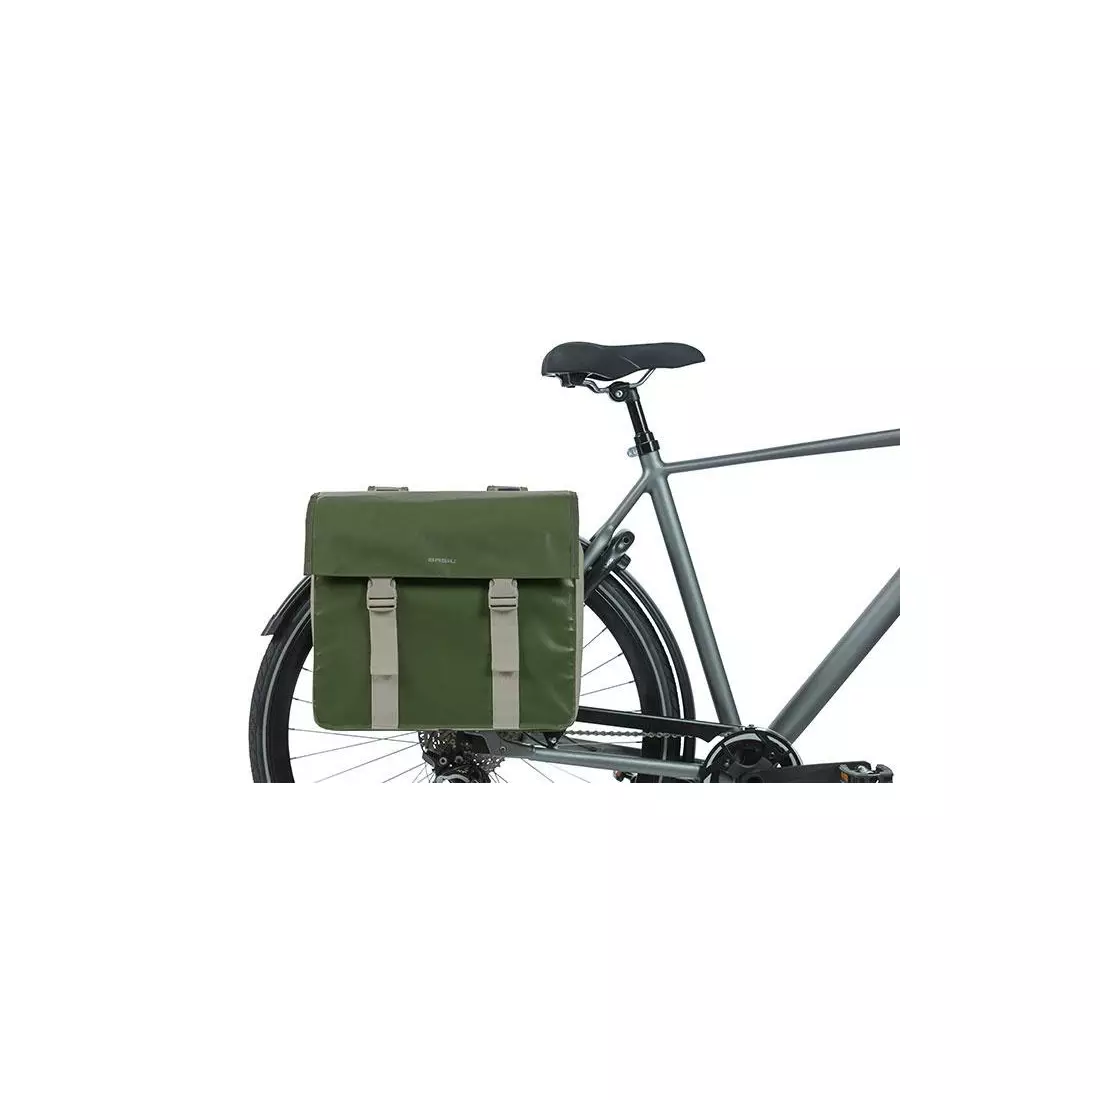 BASIL doppelte Fahrradtasche URBAN LOAD TORBA DOUBLE BAG, green/sand 18226